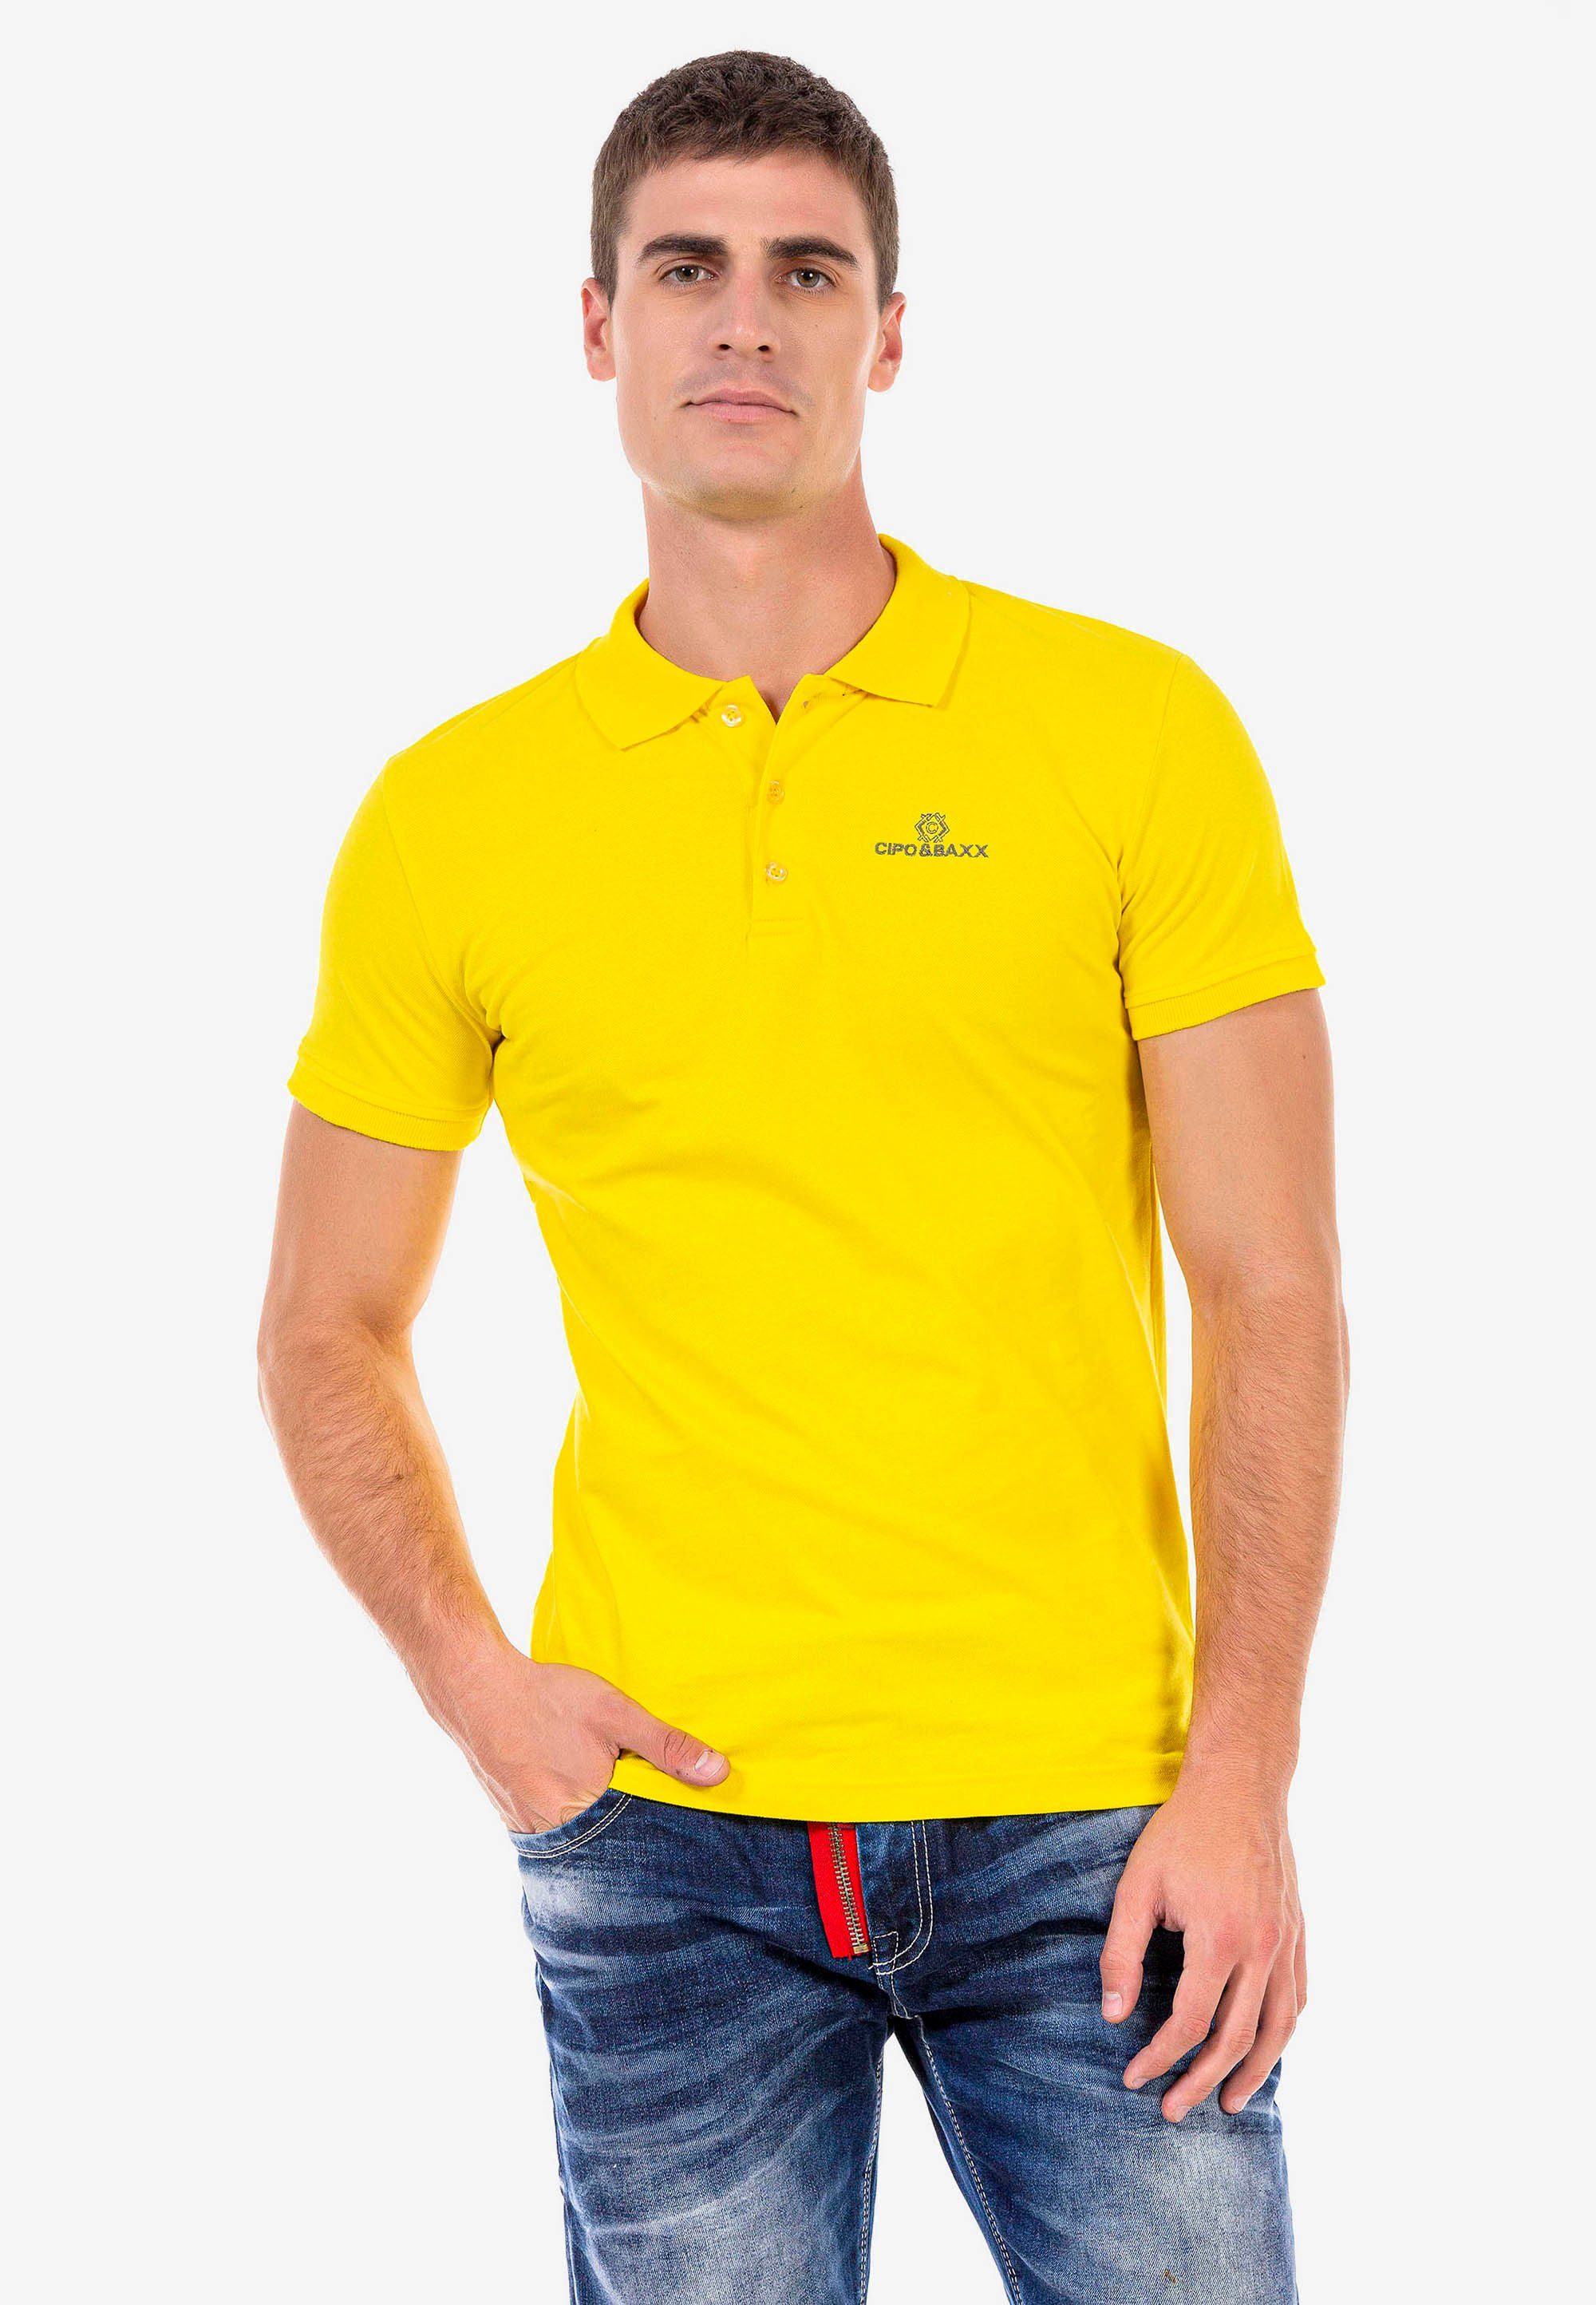 Cipo & Baxx Poloshirt mit kleiner Markenstickerei gelb